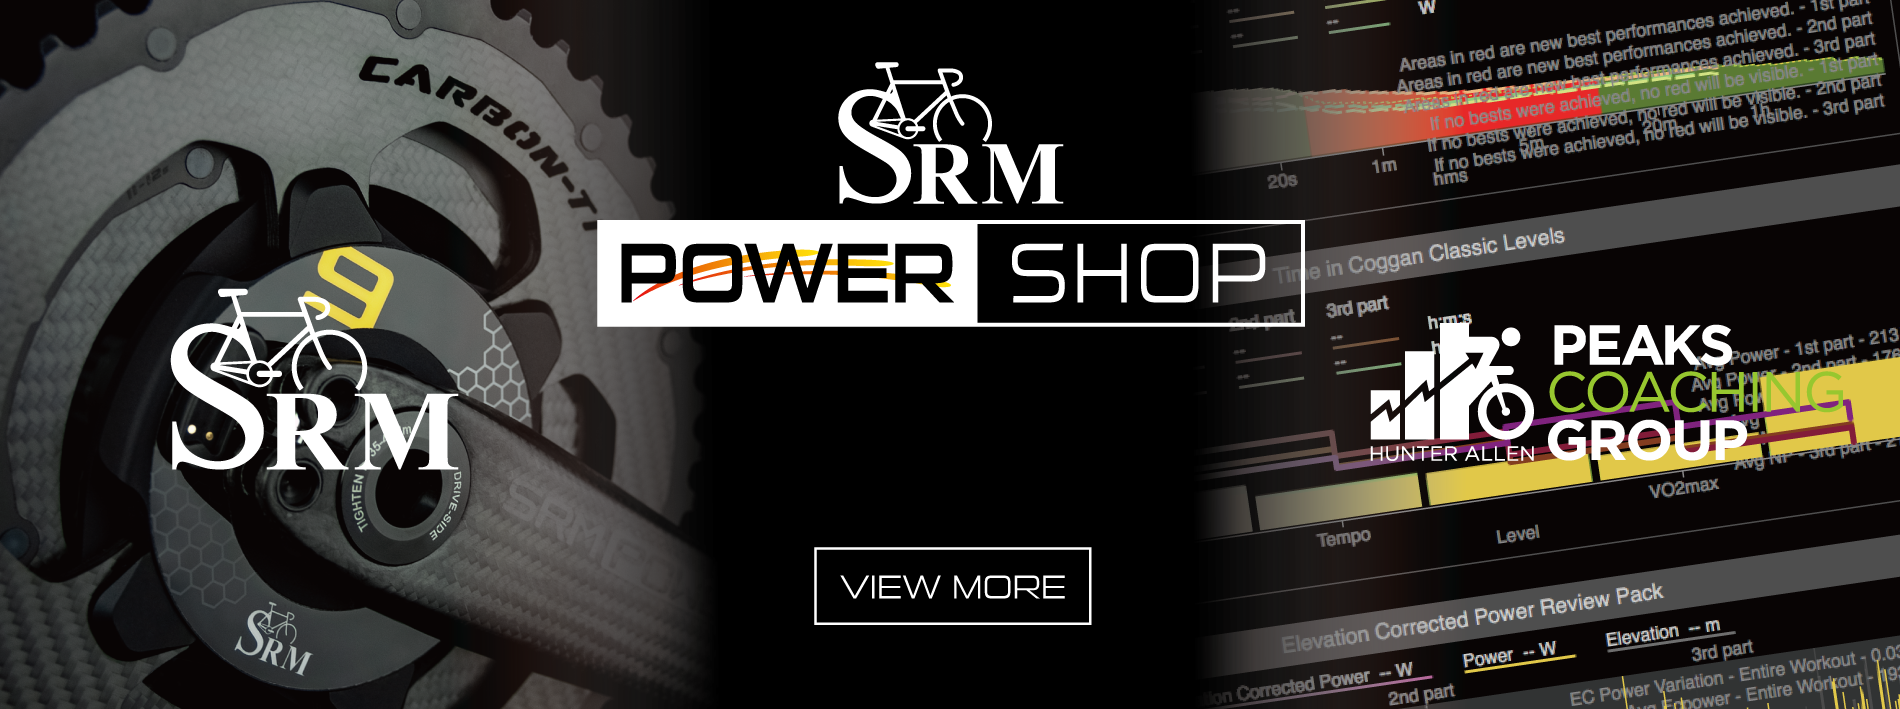 SRM POWER SHOP